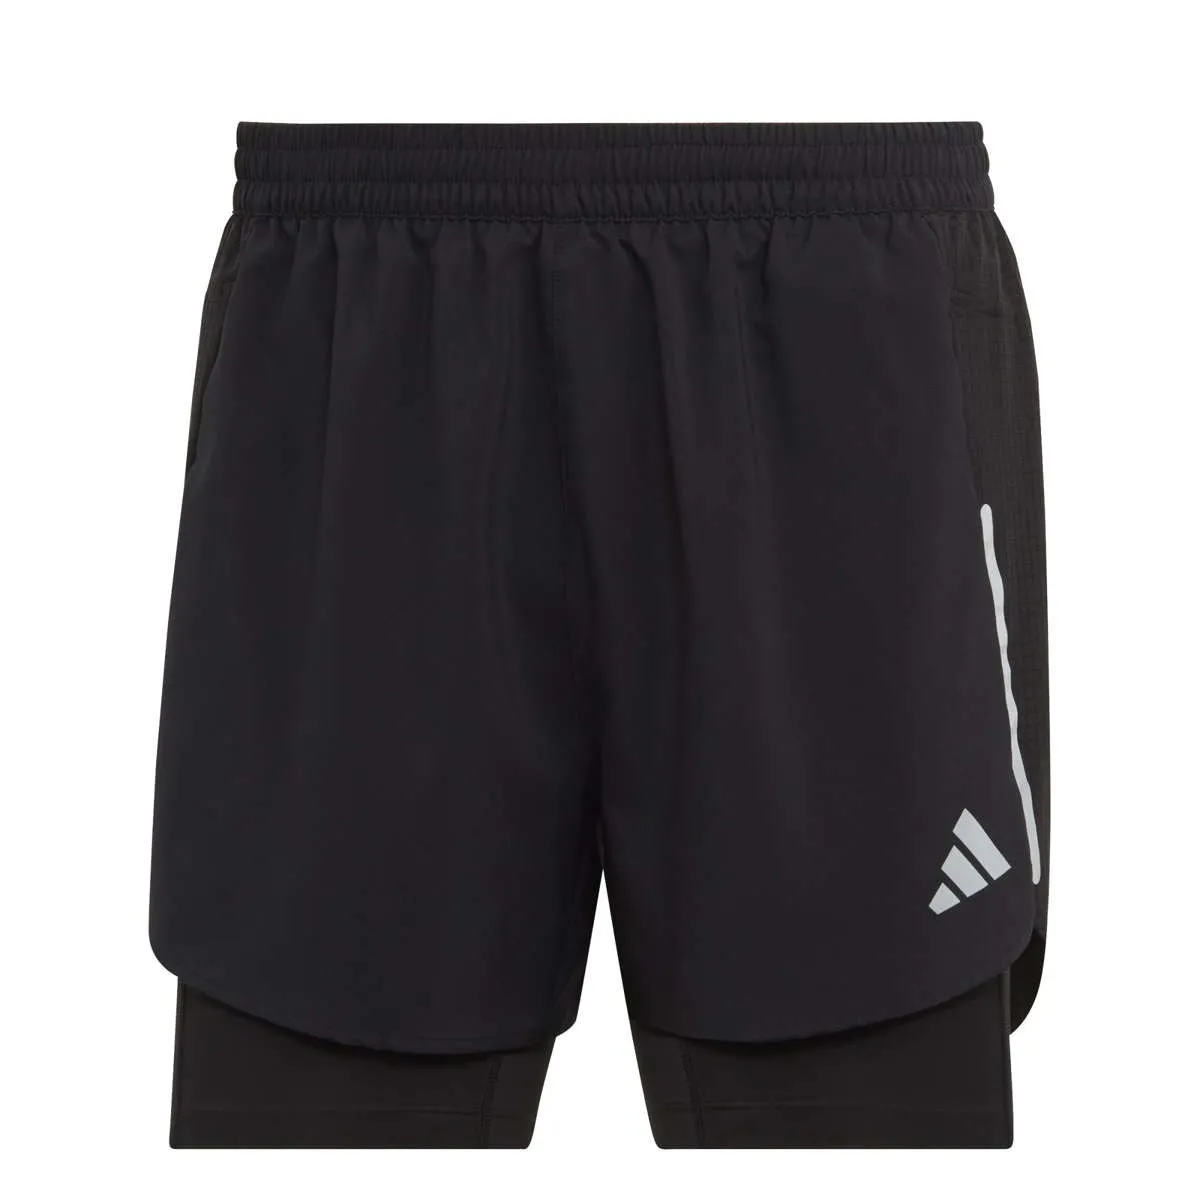 adidas 2-in-1 running shorts Herren schwarzschwarz 2 in 1